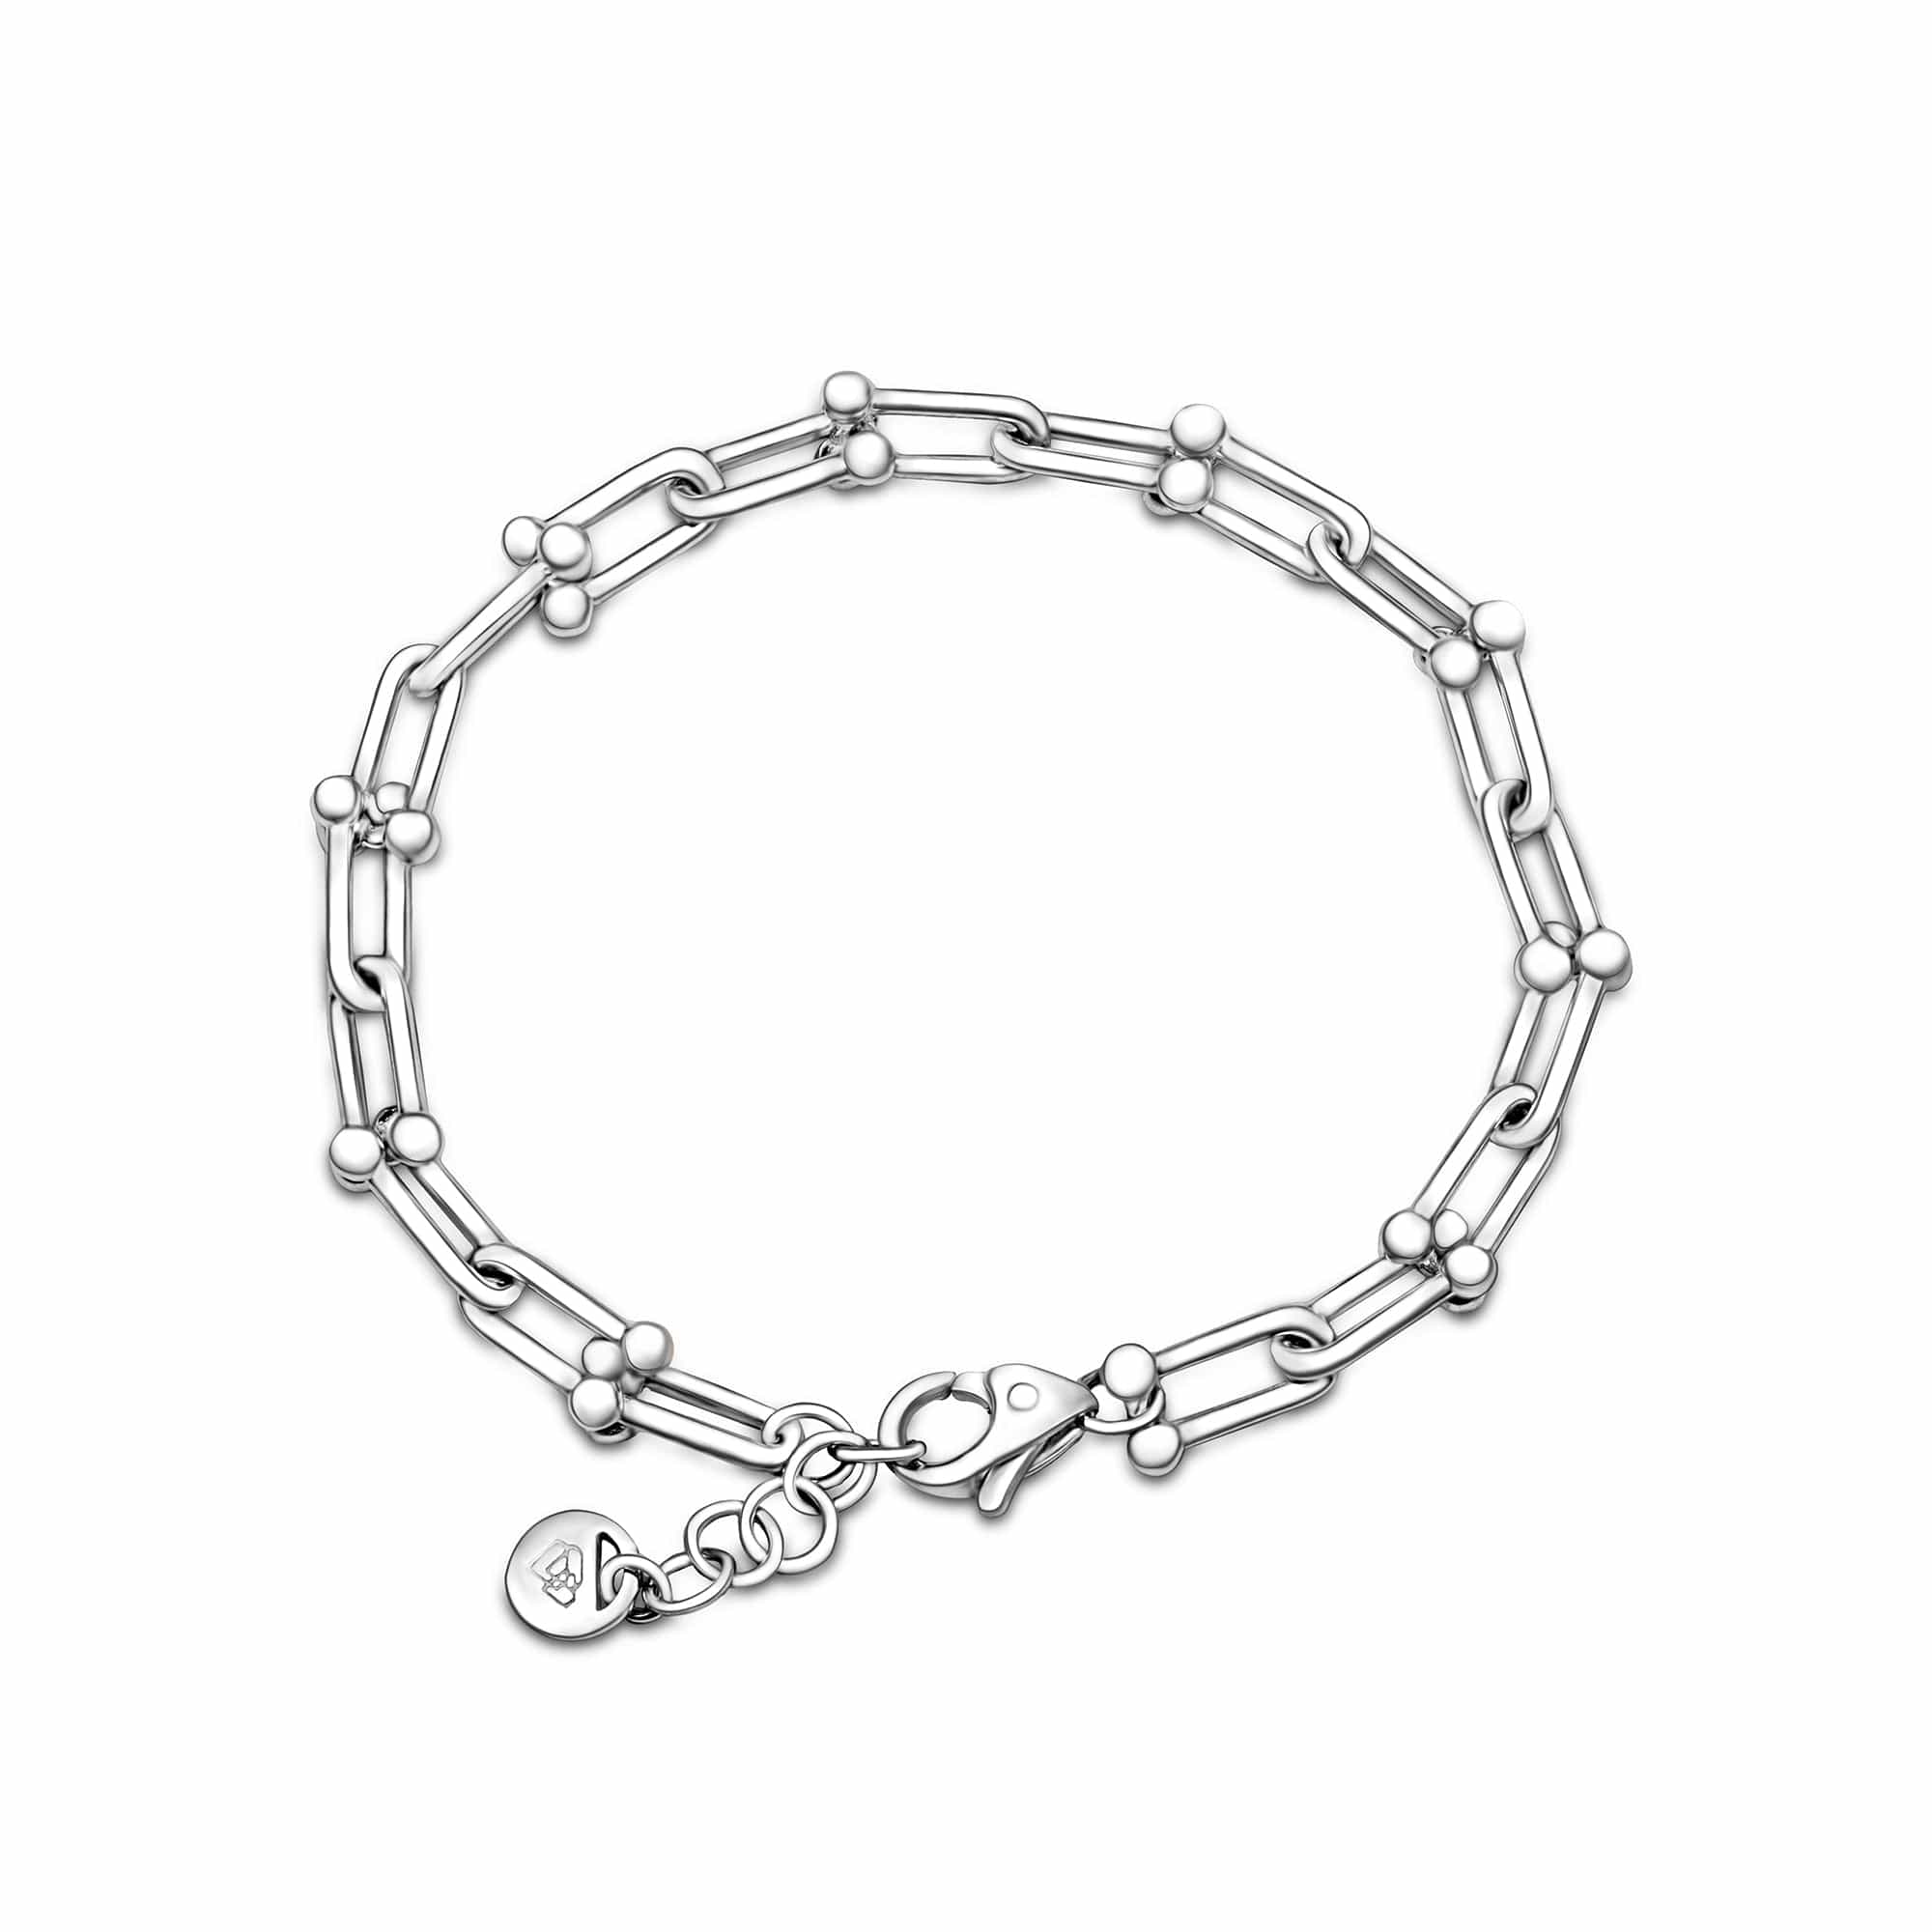 Sterling Silver Jewelry | Eleganzia Jewelry